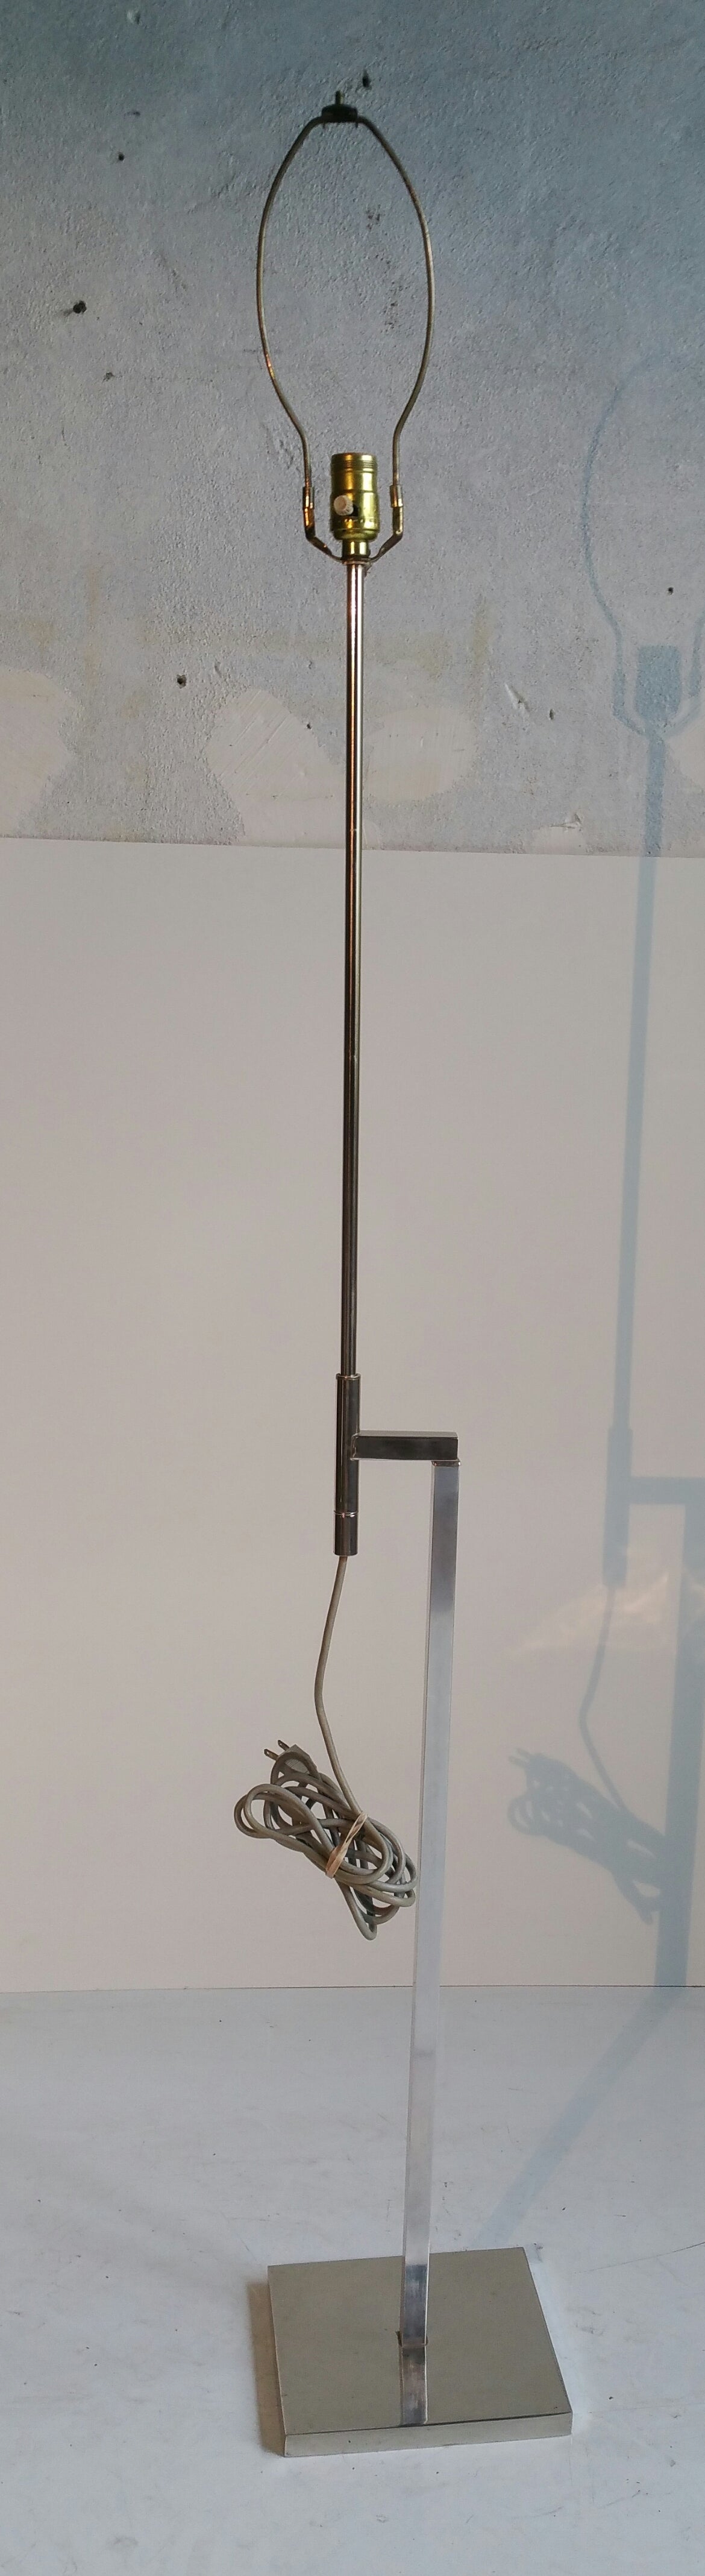 Mid-Century Modern Laurel Adjustable and Rotating Chrome Steel Floor Lamp